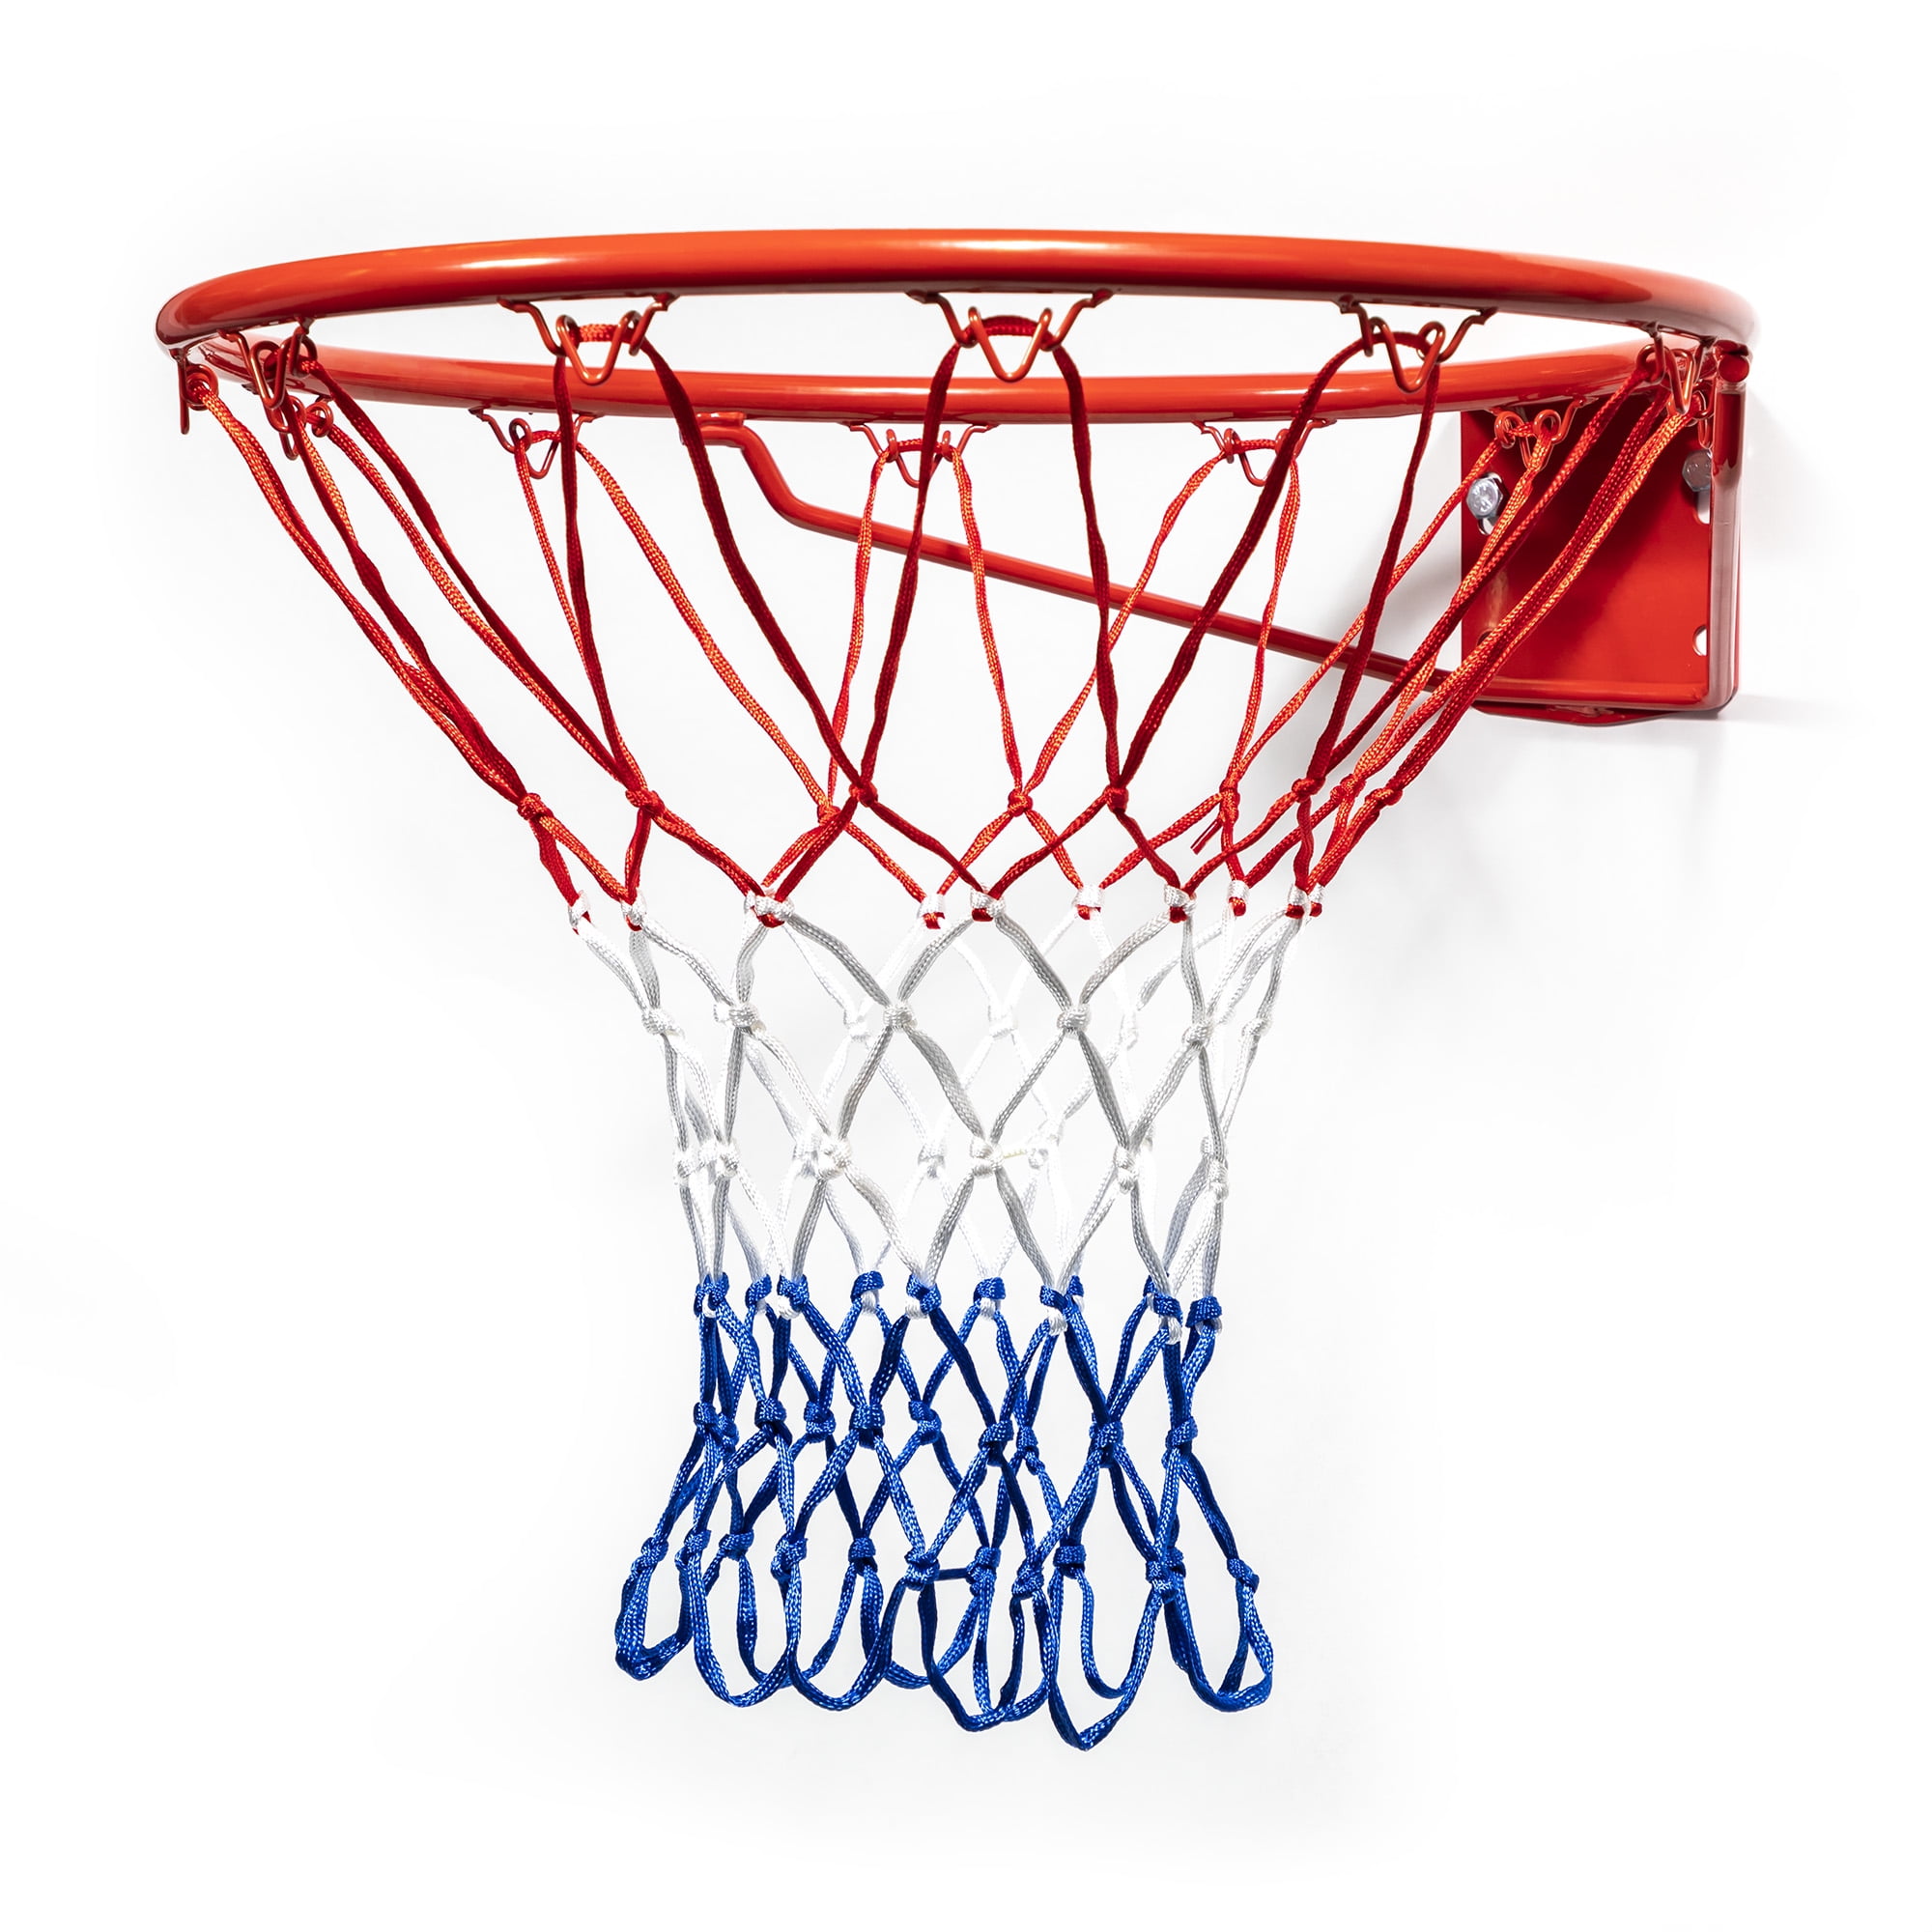 Basketball Steel Chain Net Hoop Heavy Duty Sports Galvanized Easy Metal Best New 